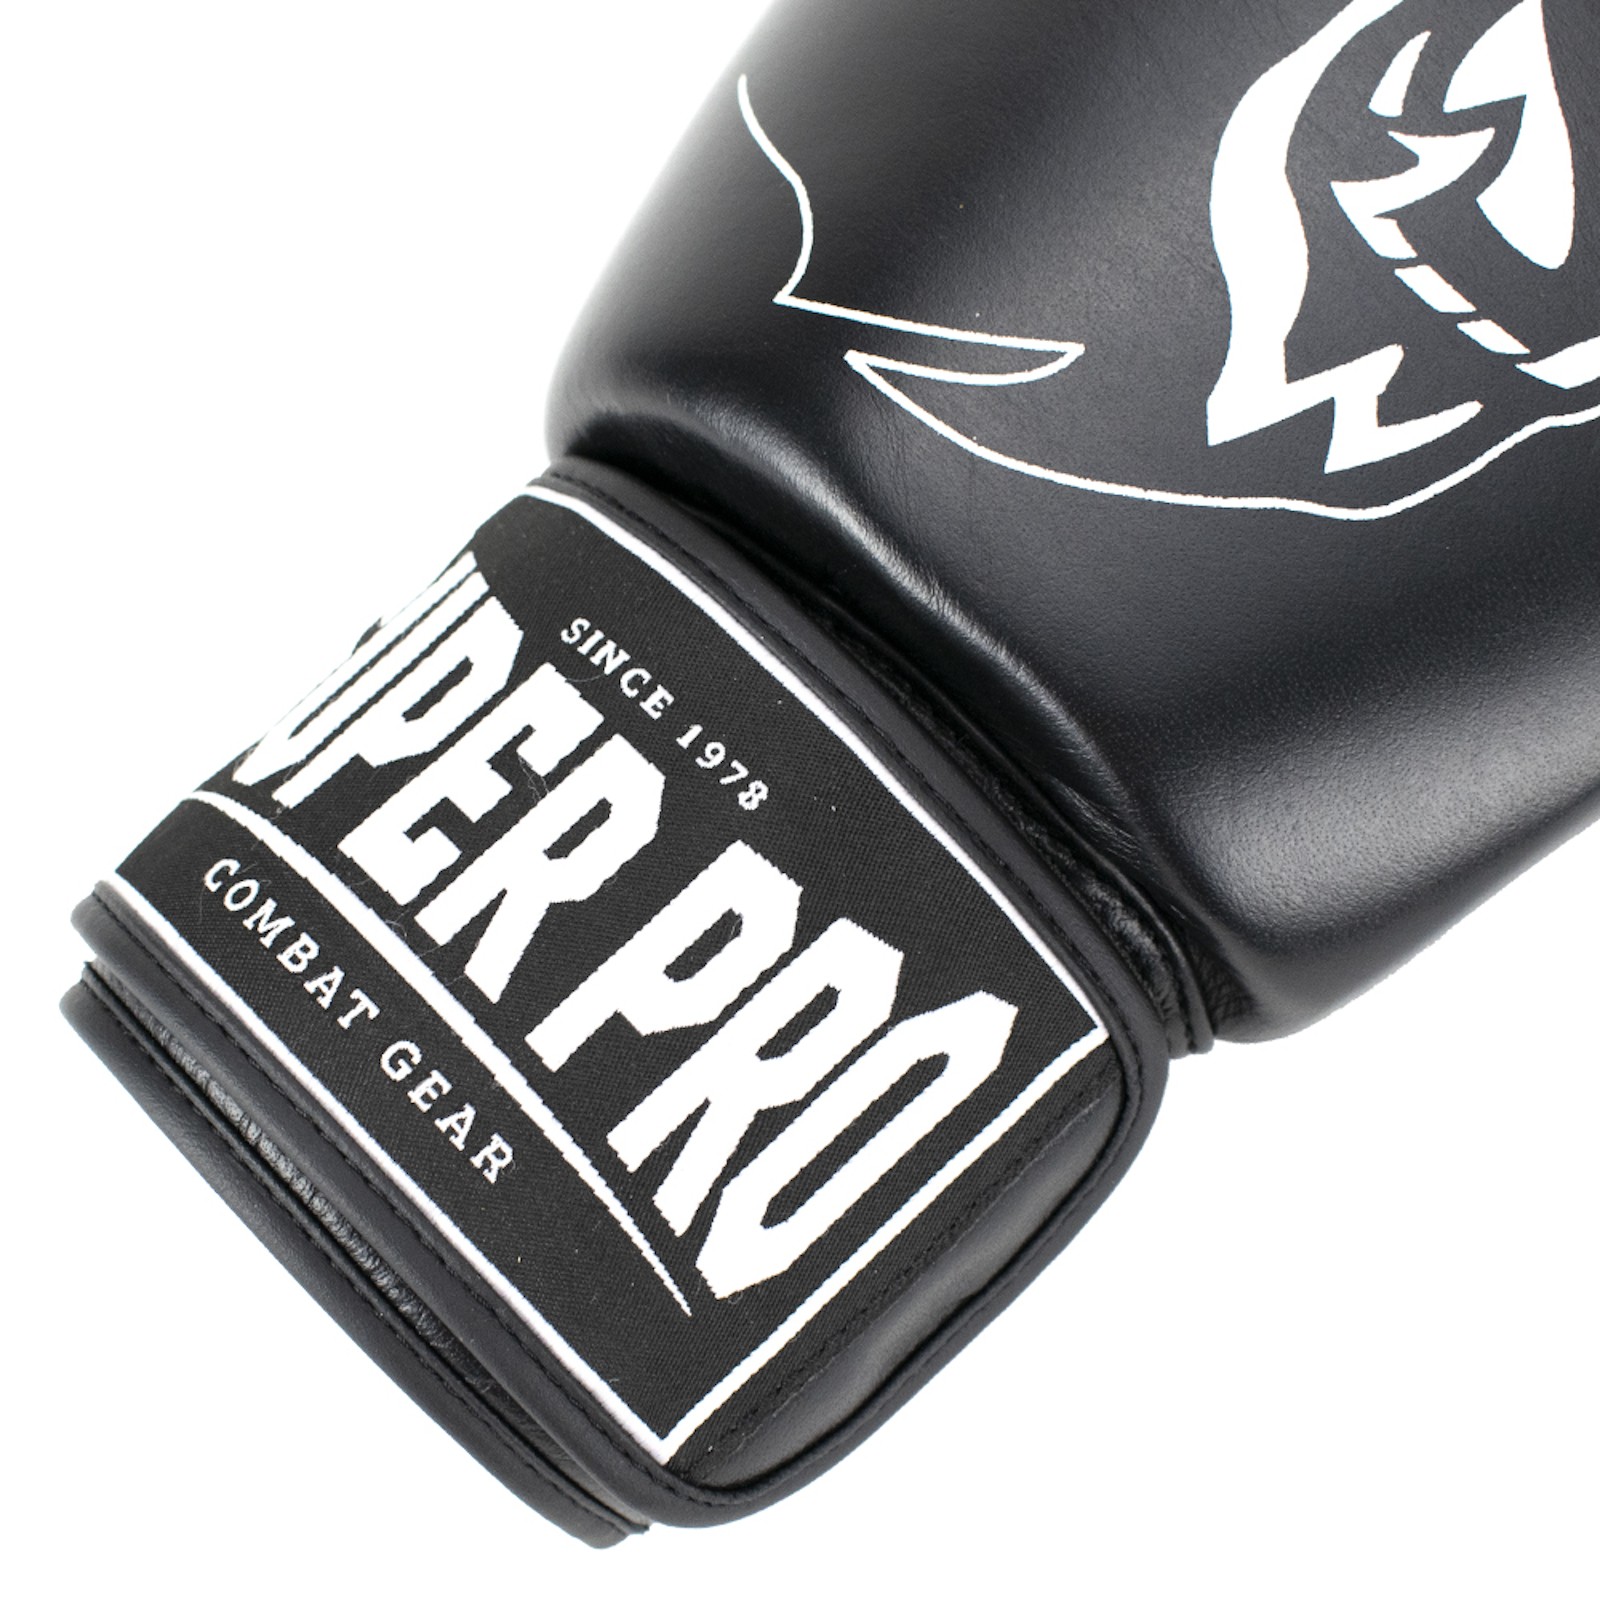 Super Pro Sport-Tiedje Boxhandschuh Warrior 